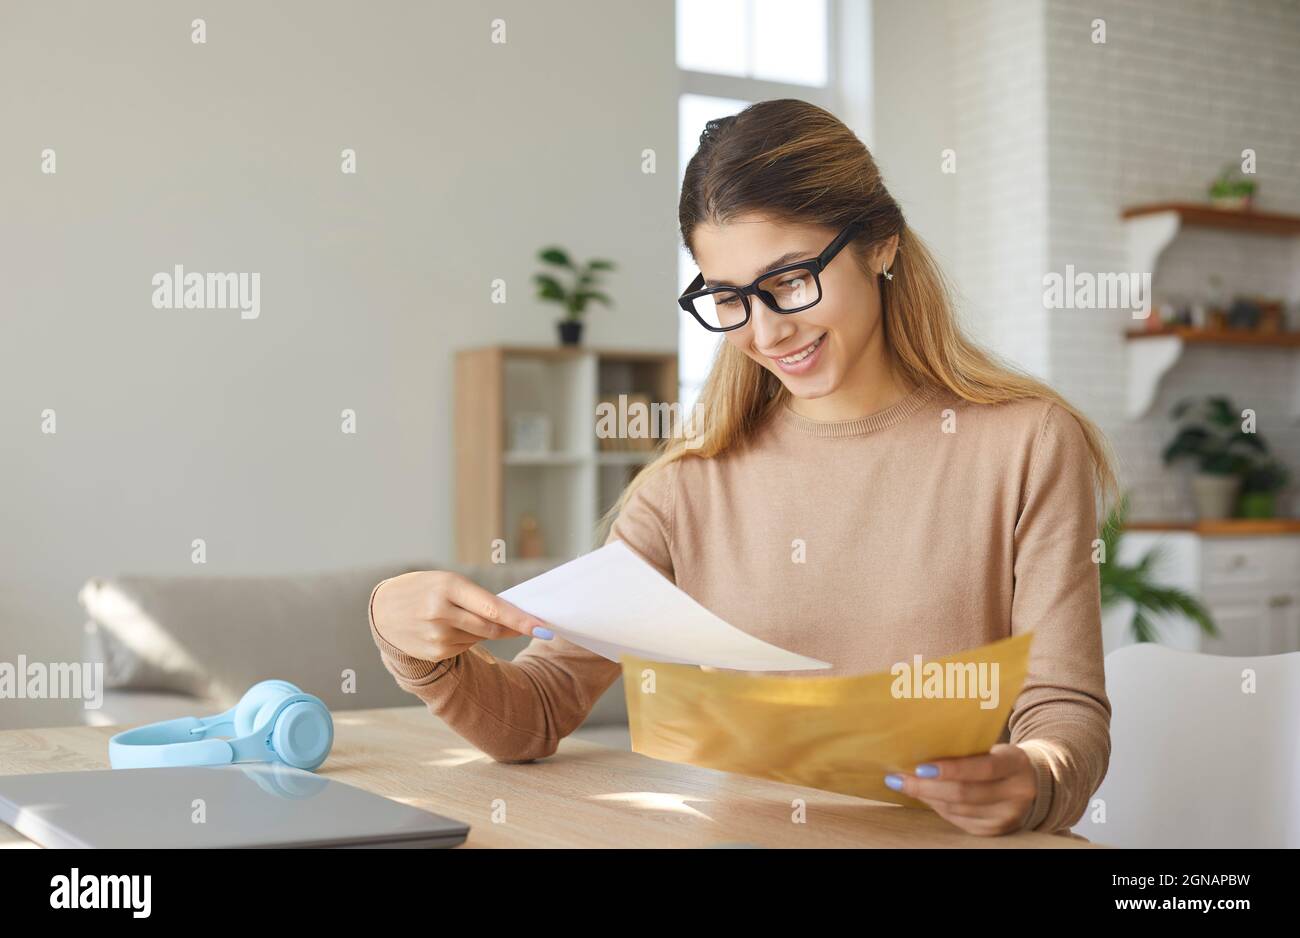 Une jeune femme souriante, excitée par de bonnes nouvelles, lit une lettre dépliée à partir d'une enveloppe en papier. Banque D'Images